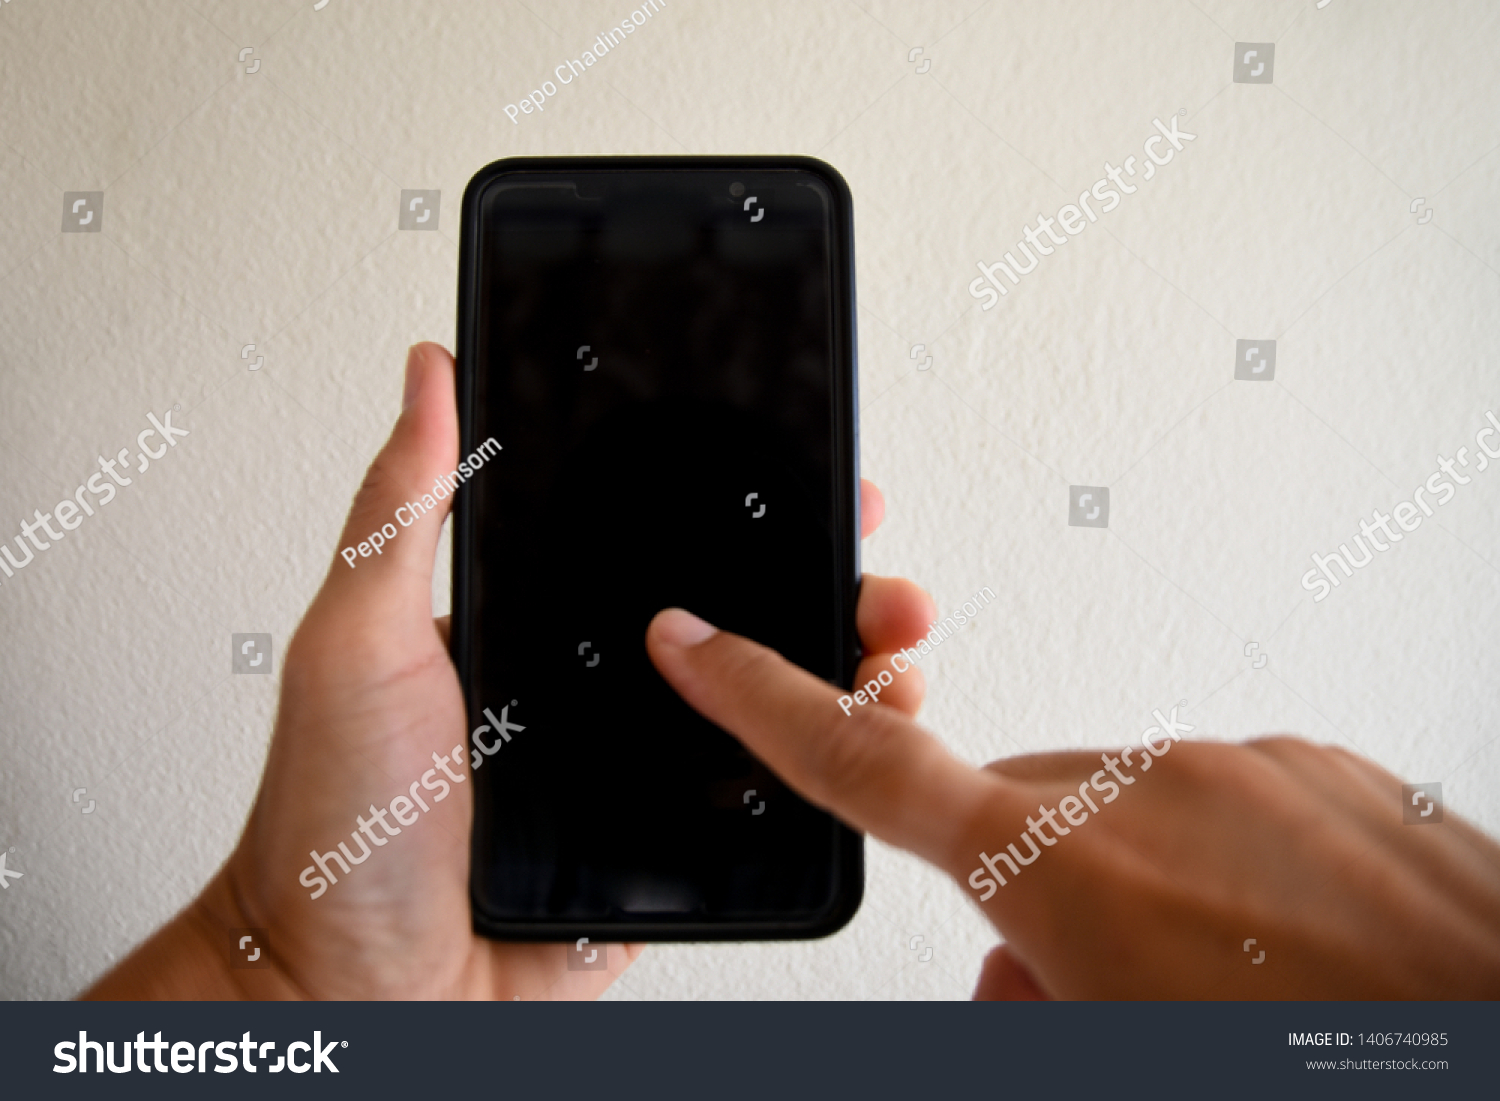 People using smartphones using hands #1406740985